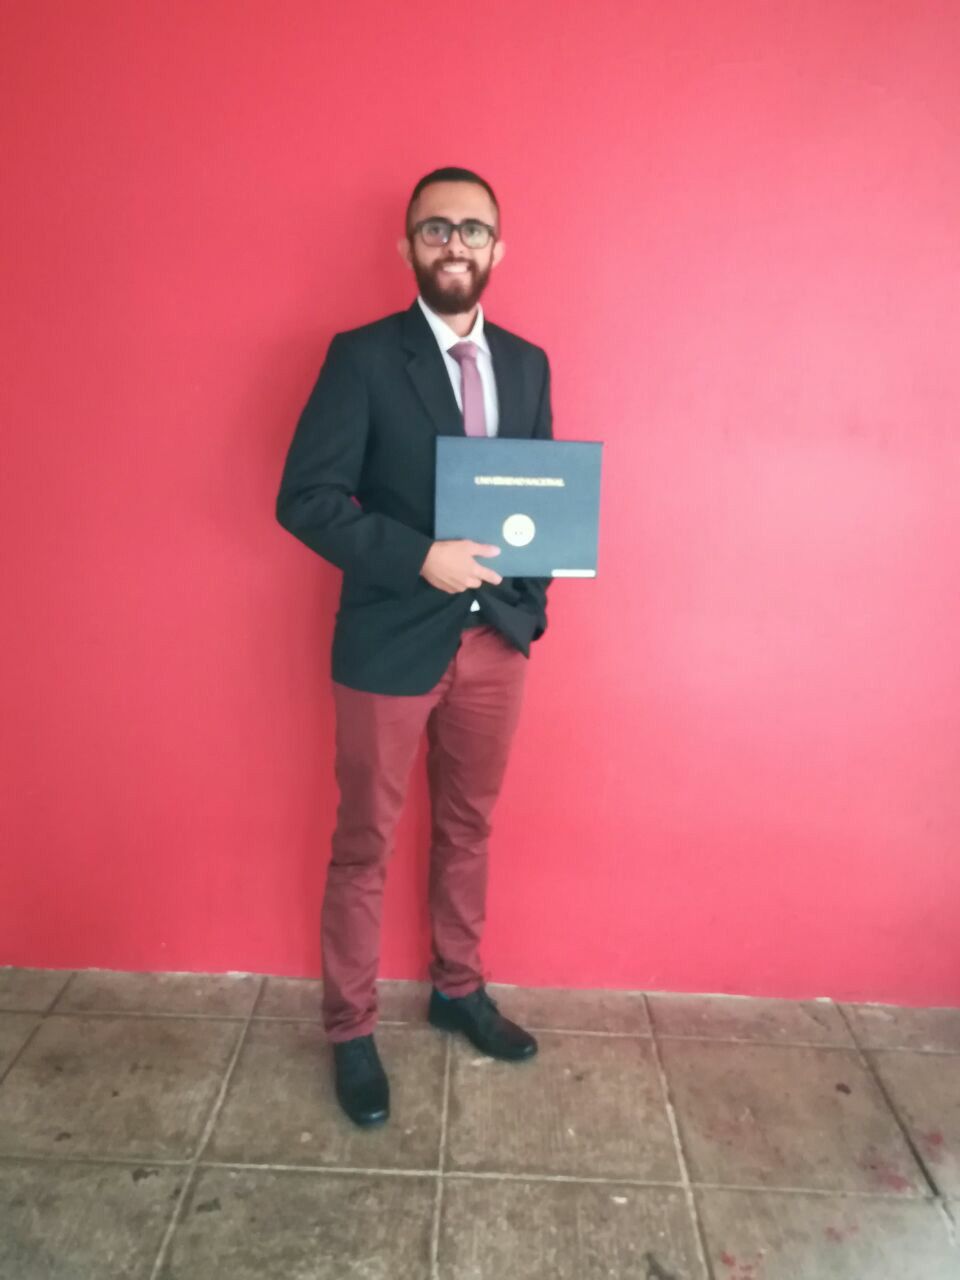 El joven informático se graduó hace cinco años y era muy comprometido con su profesión. Foto: Tomada de Facebook